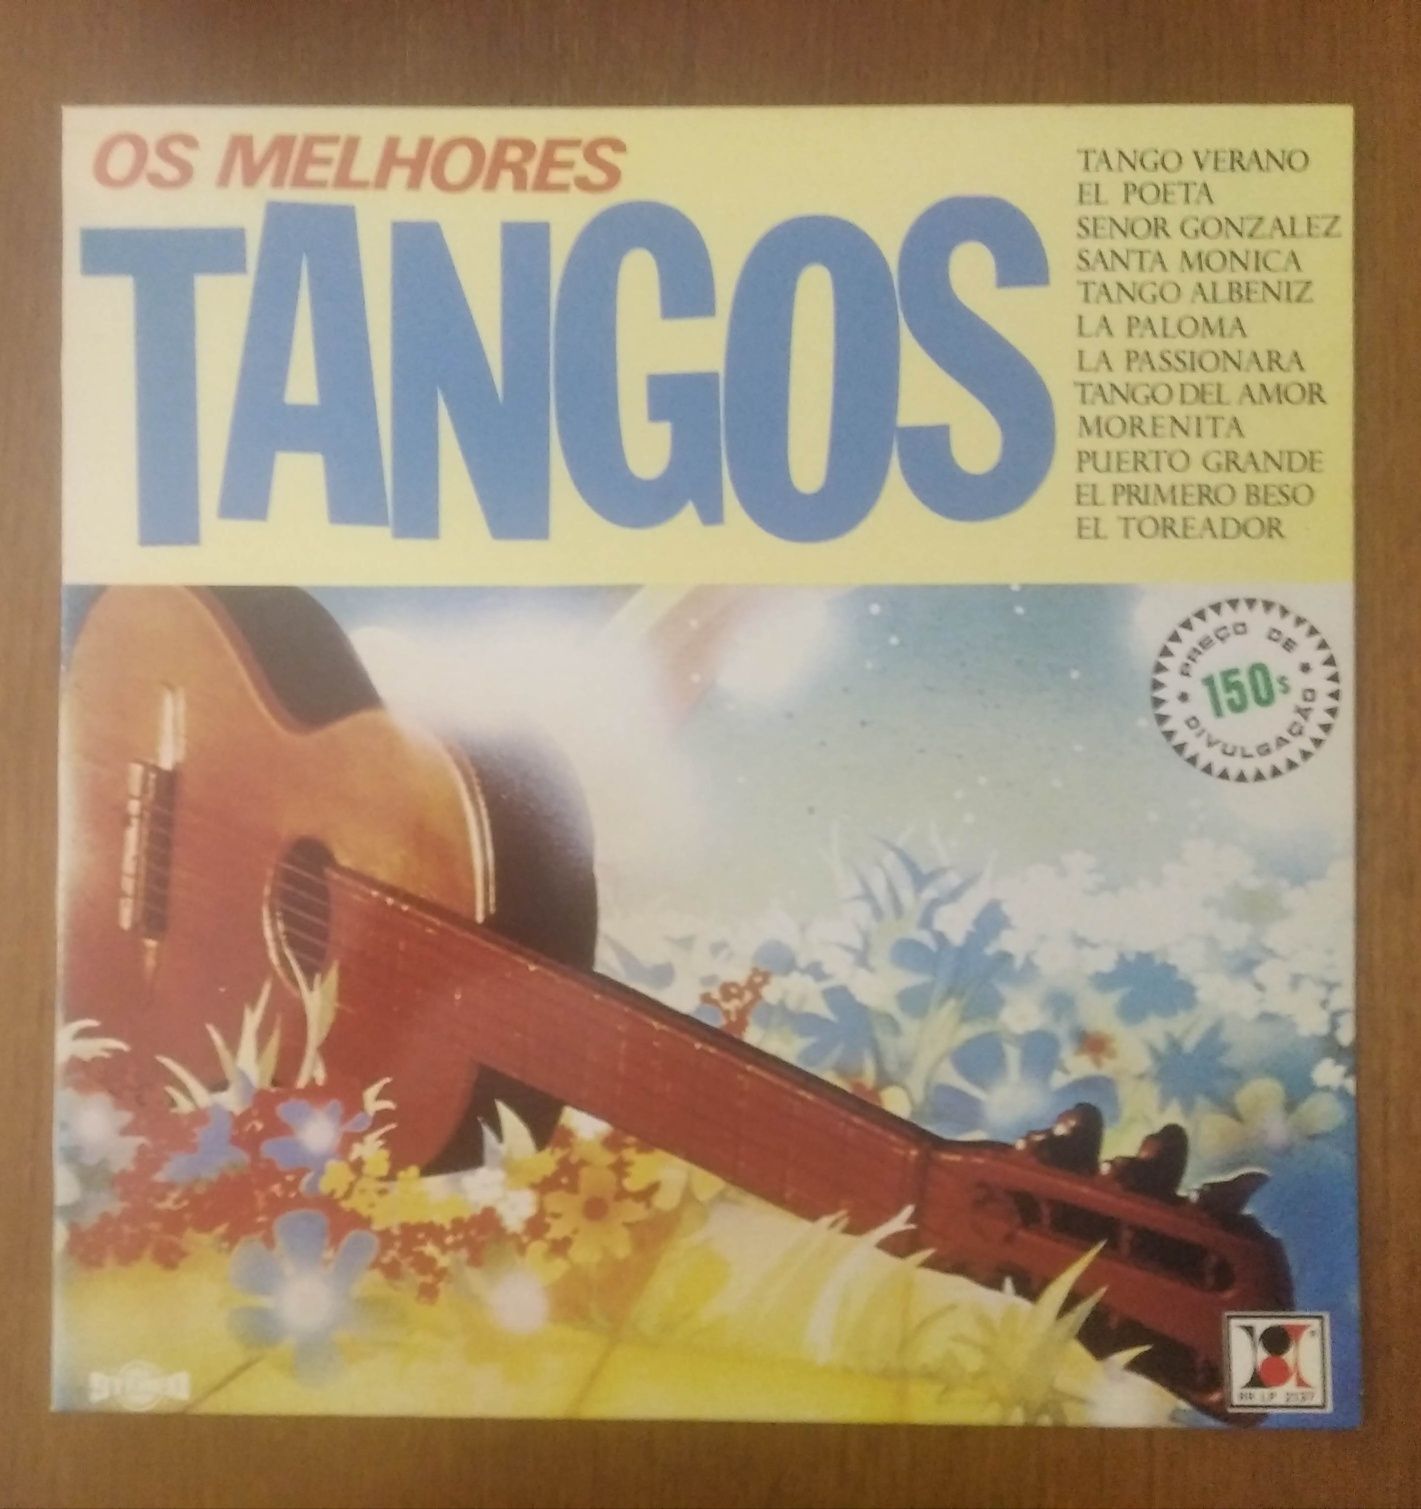 Disco de vinil "Os Melhores Tangos"